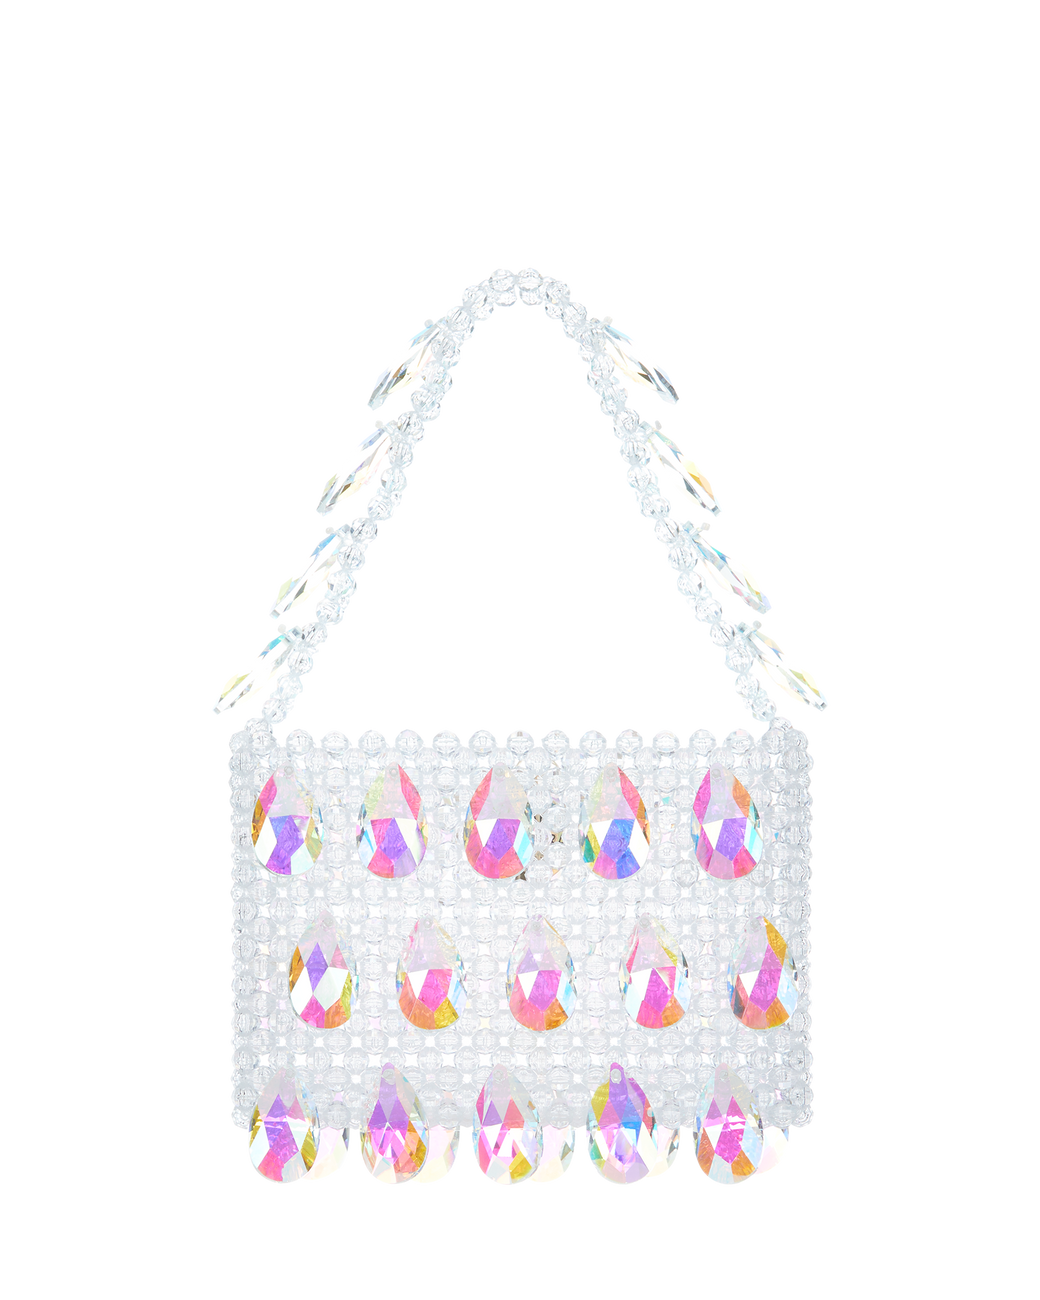 Swarovski Crystal Bag, Heart Bag, Wedding Purse, Crystal Box Clutch, Bridal  Bag, Red Crystal Heart, Evening Clutch Bag - Etsy